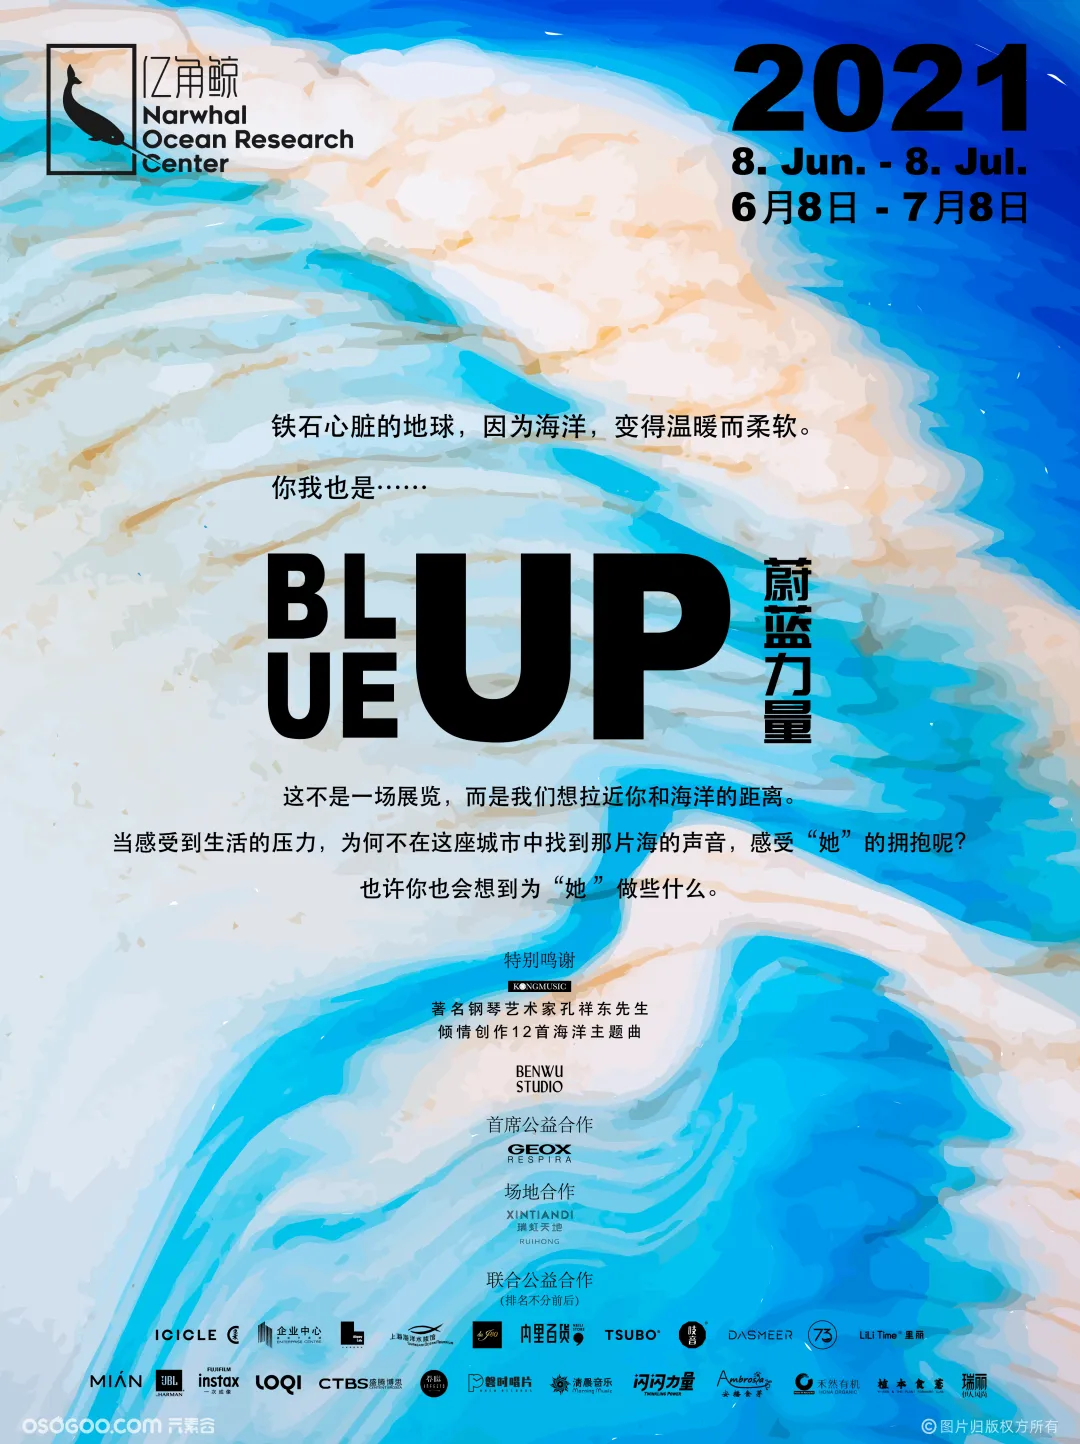 「BLUE UP蔚蓝力量」城市艺术公益活动